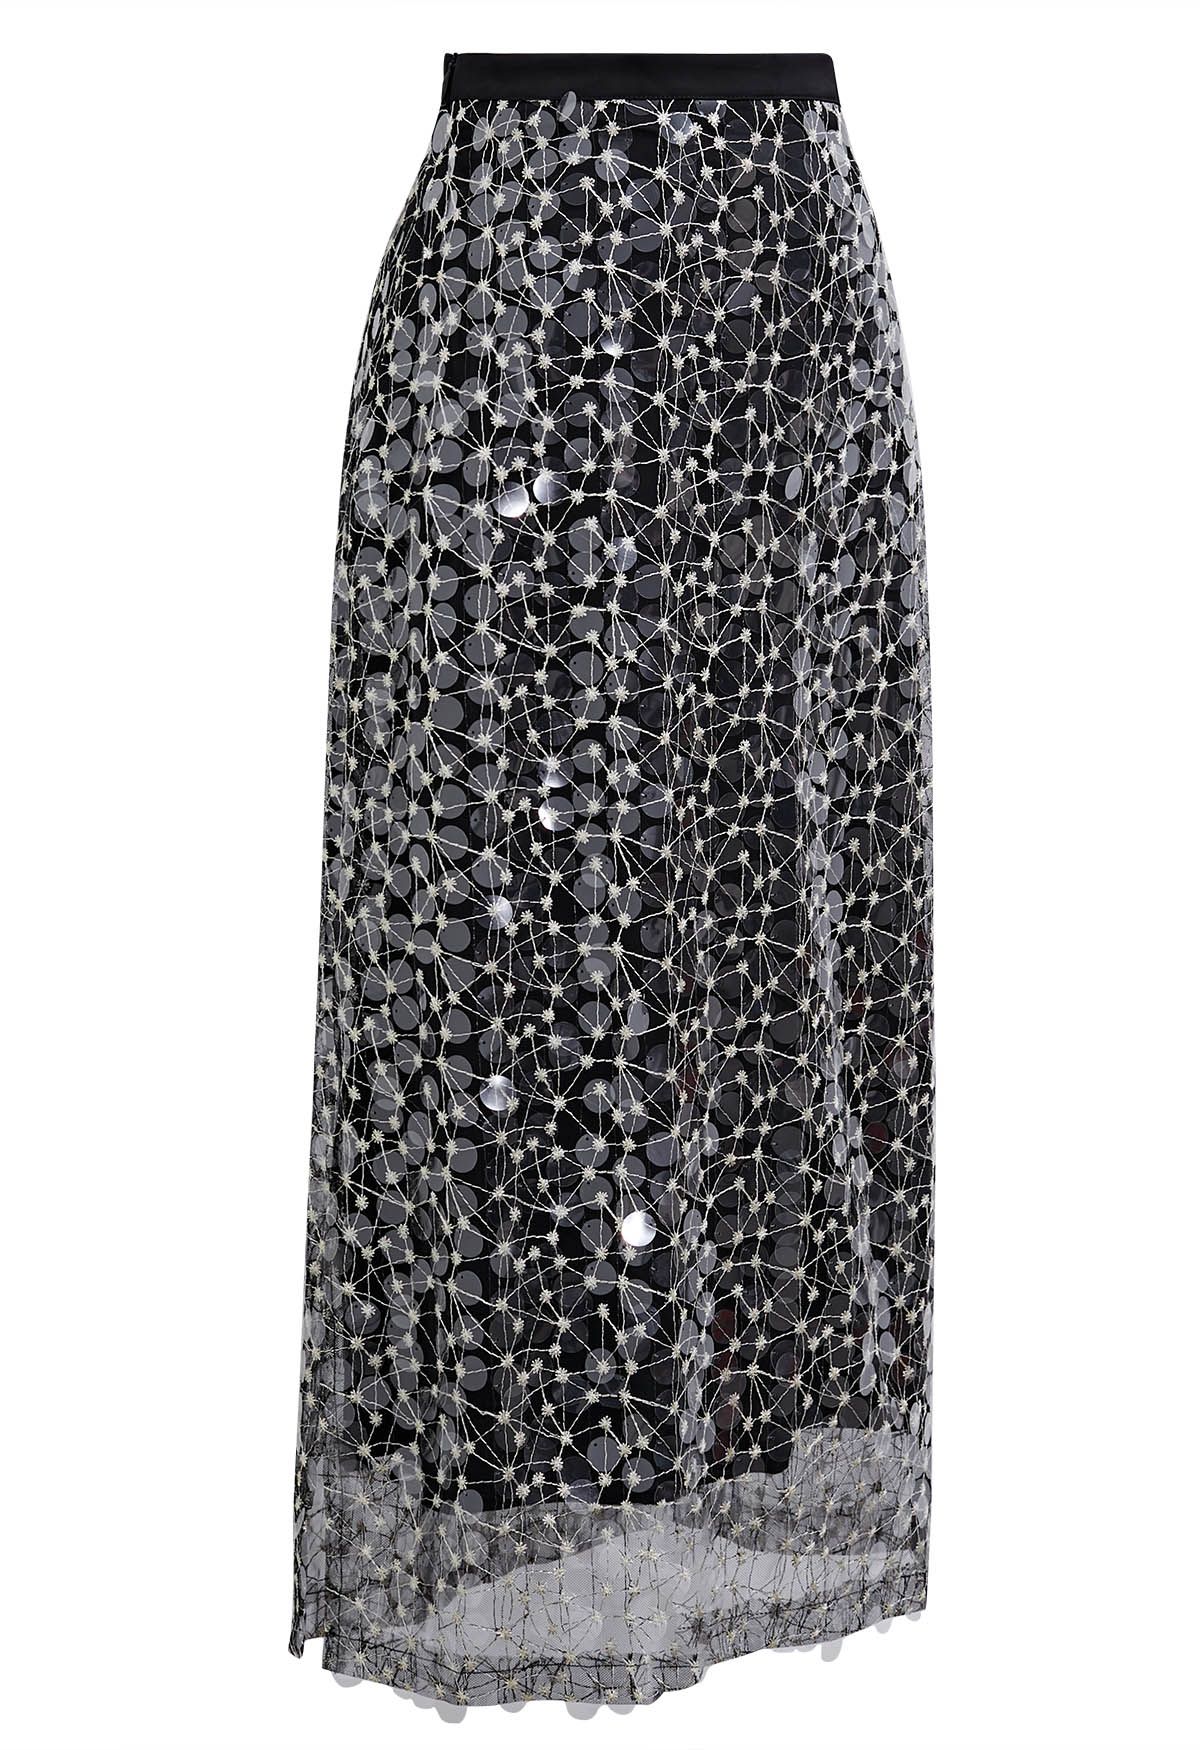 Falda de malla bordada con lentejuelas brillantes en negro